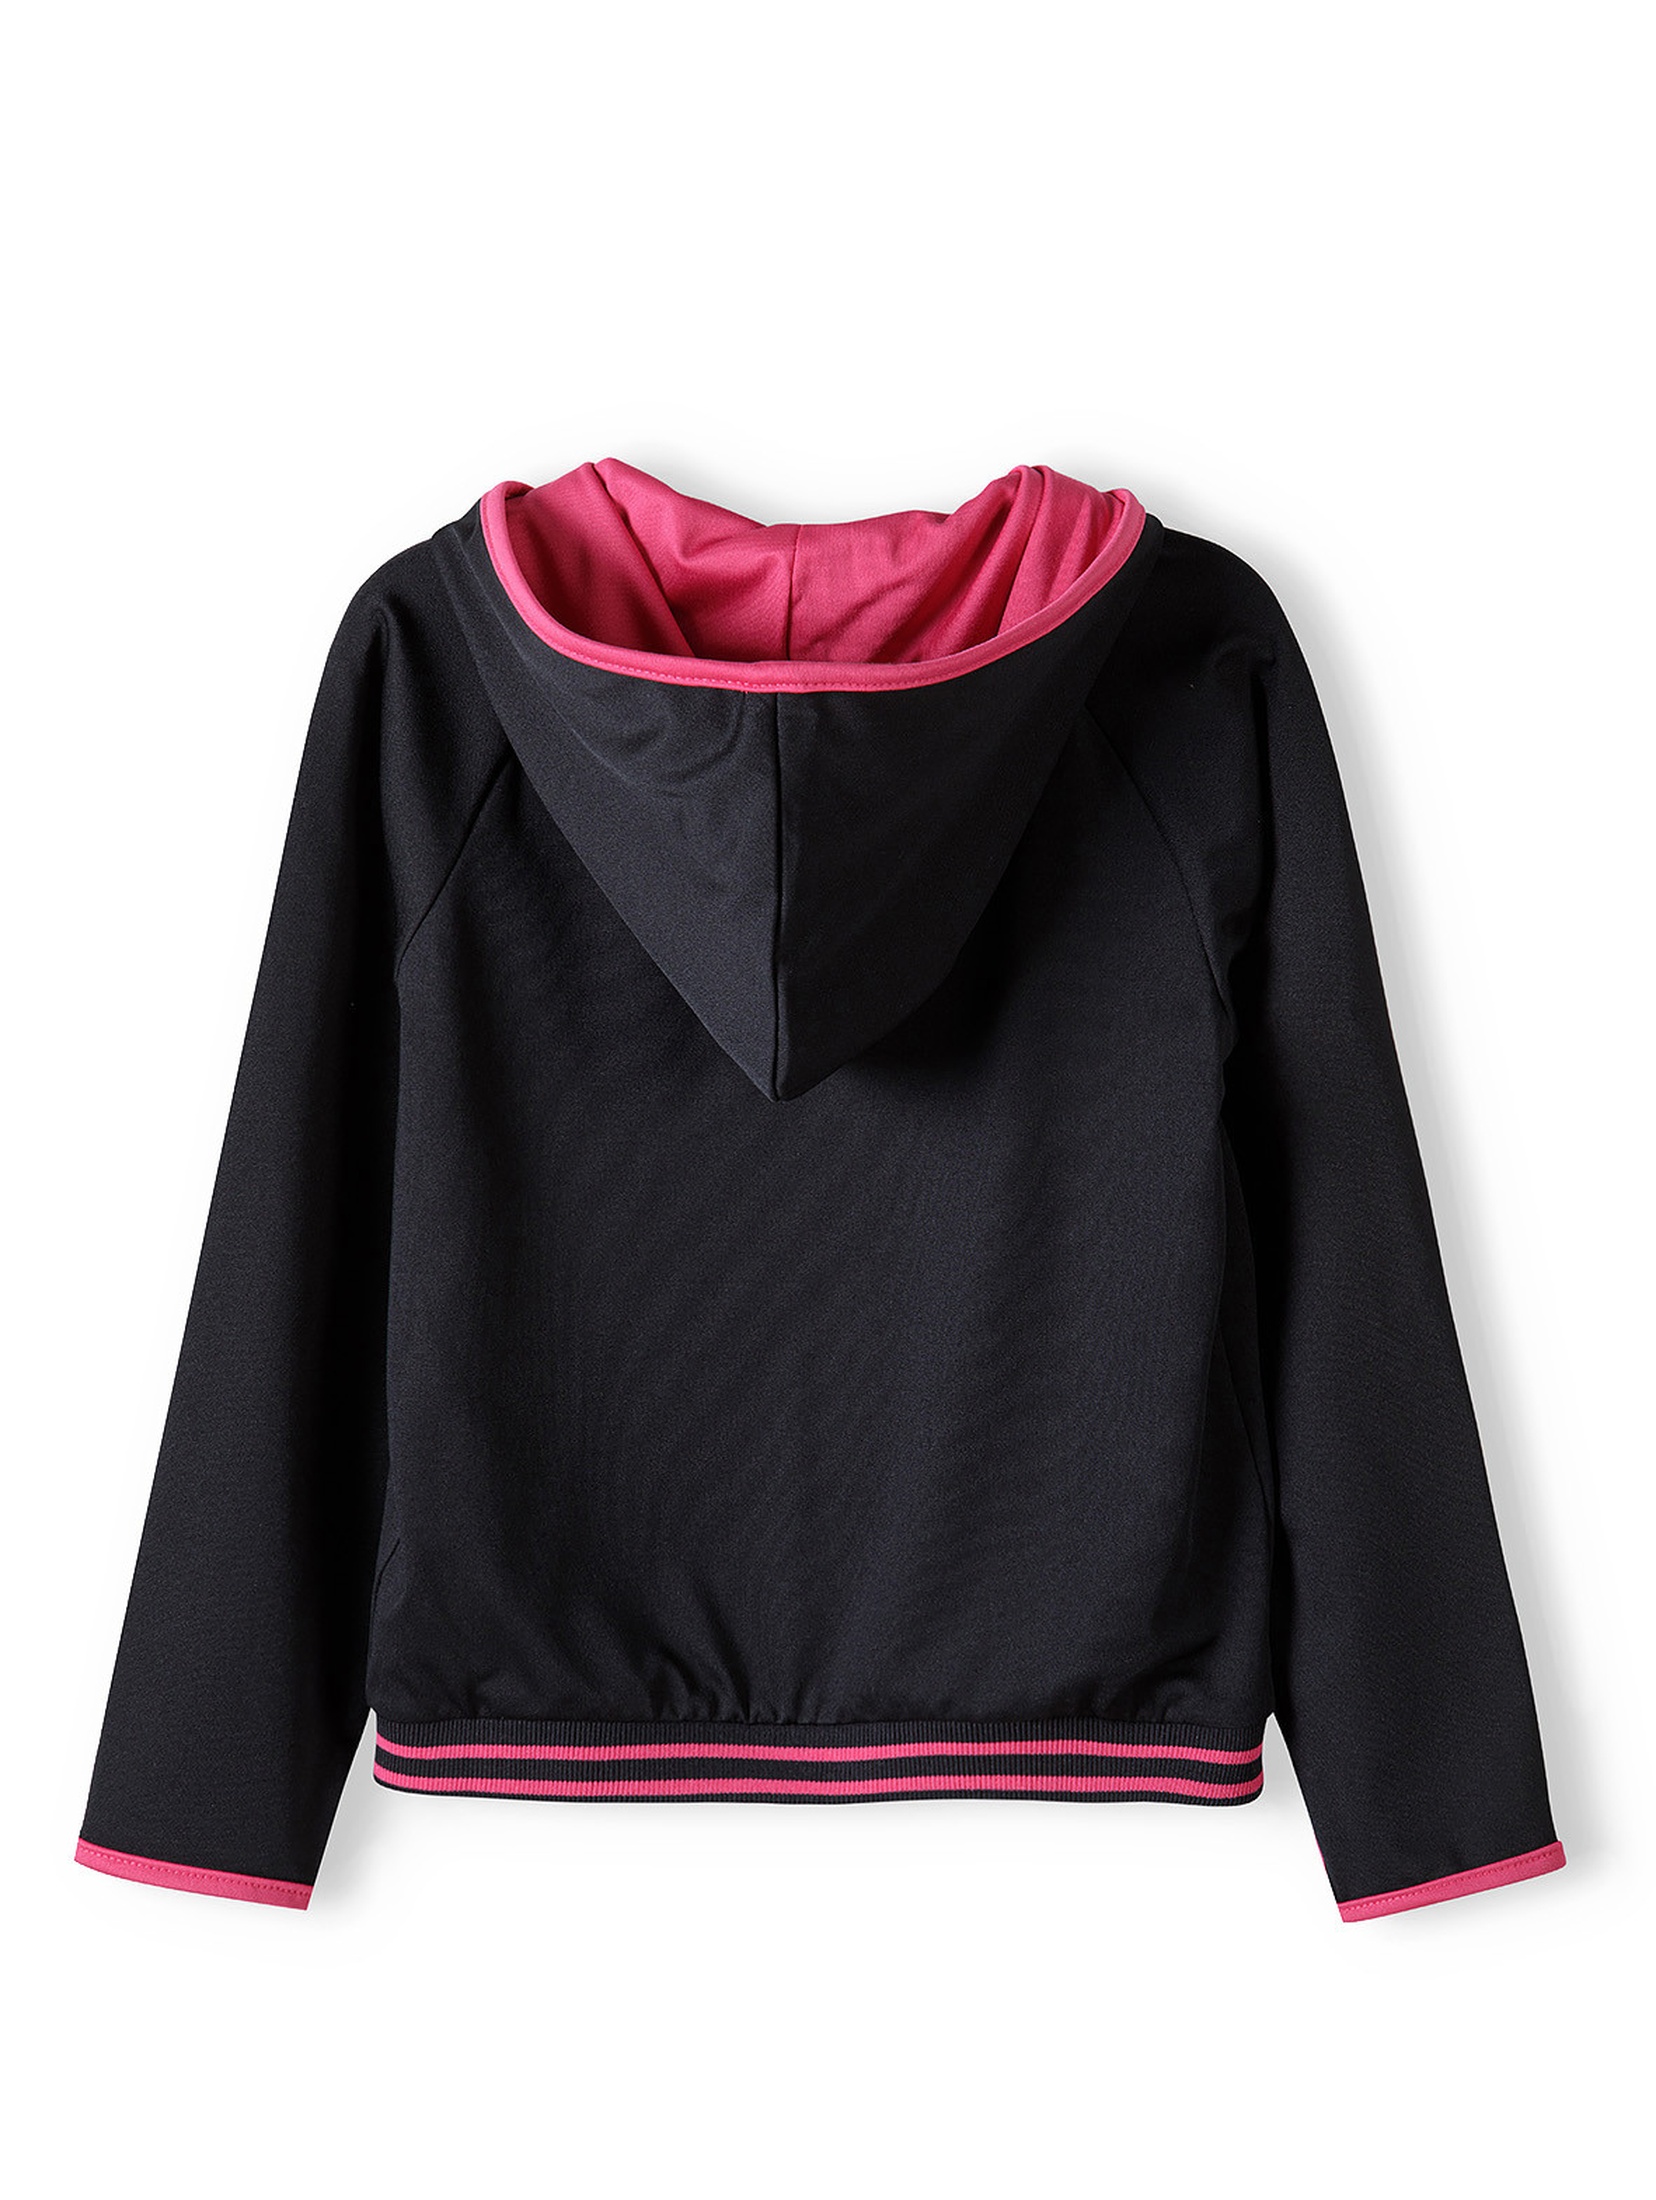 Czarna bluza sportowa dla dziewczynki z kapturem